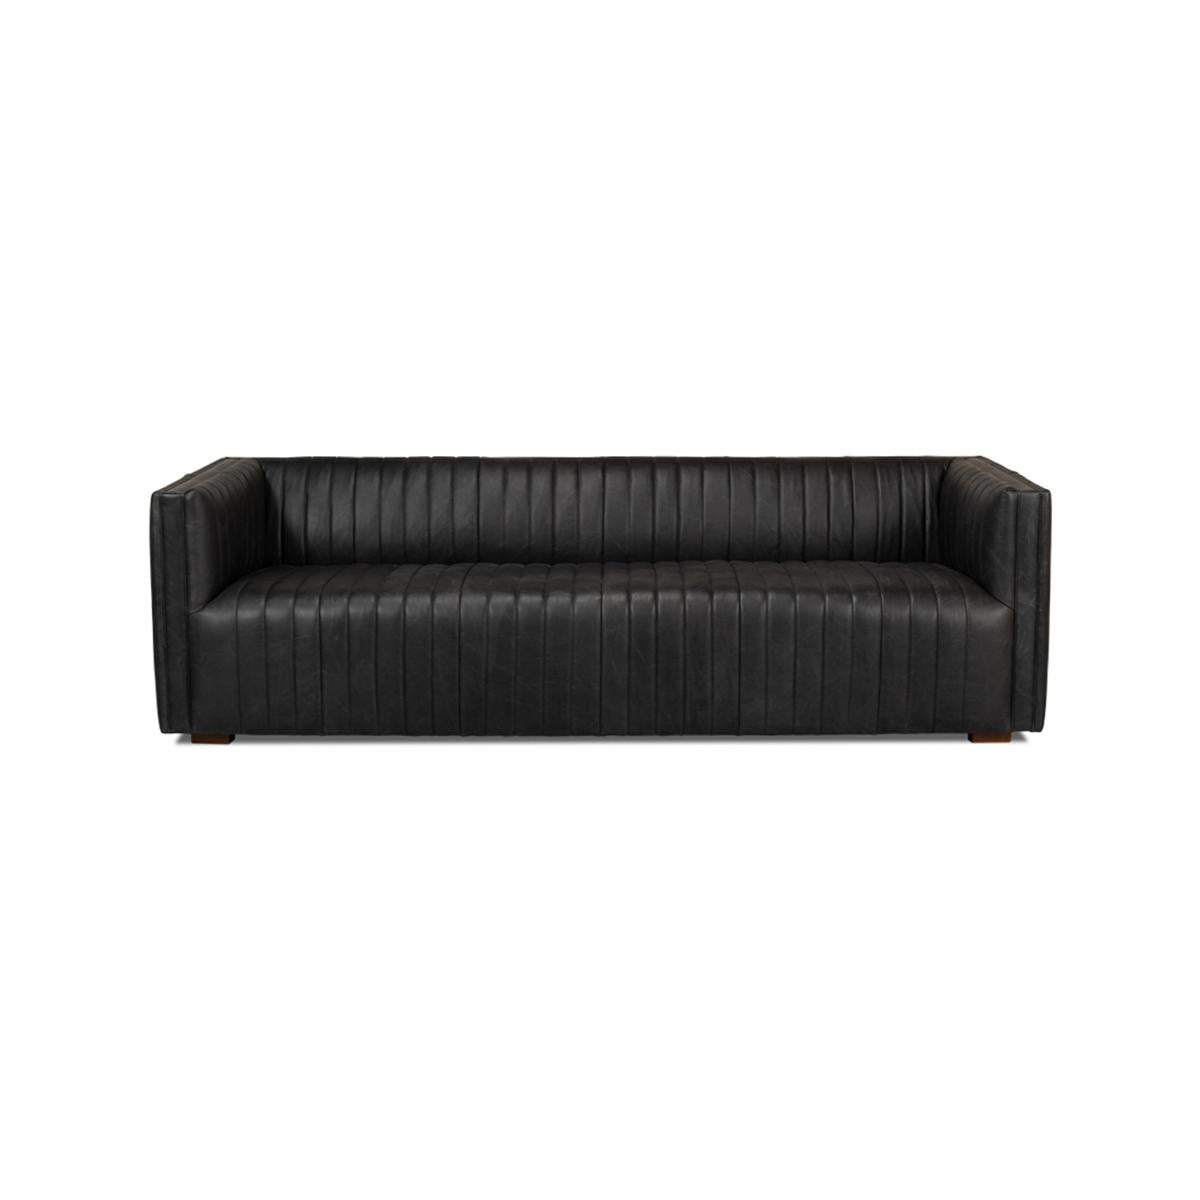 Das elegante Sofa hat ein einzigartiges, modernes, kanalisiertes Lederdesign an der Rückenlehne, dem Sitz, den Armen und der Rückseite. 

Die großzügigen Proportionen mit einer Länge von 96 Zoll ermöglichen bequeme Gespräche und sind ein Blickfang